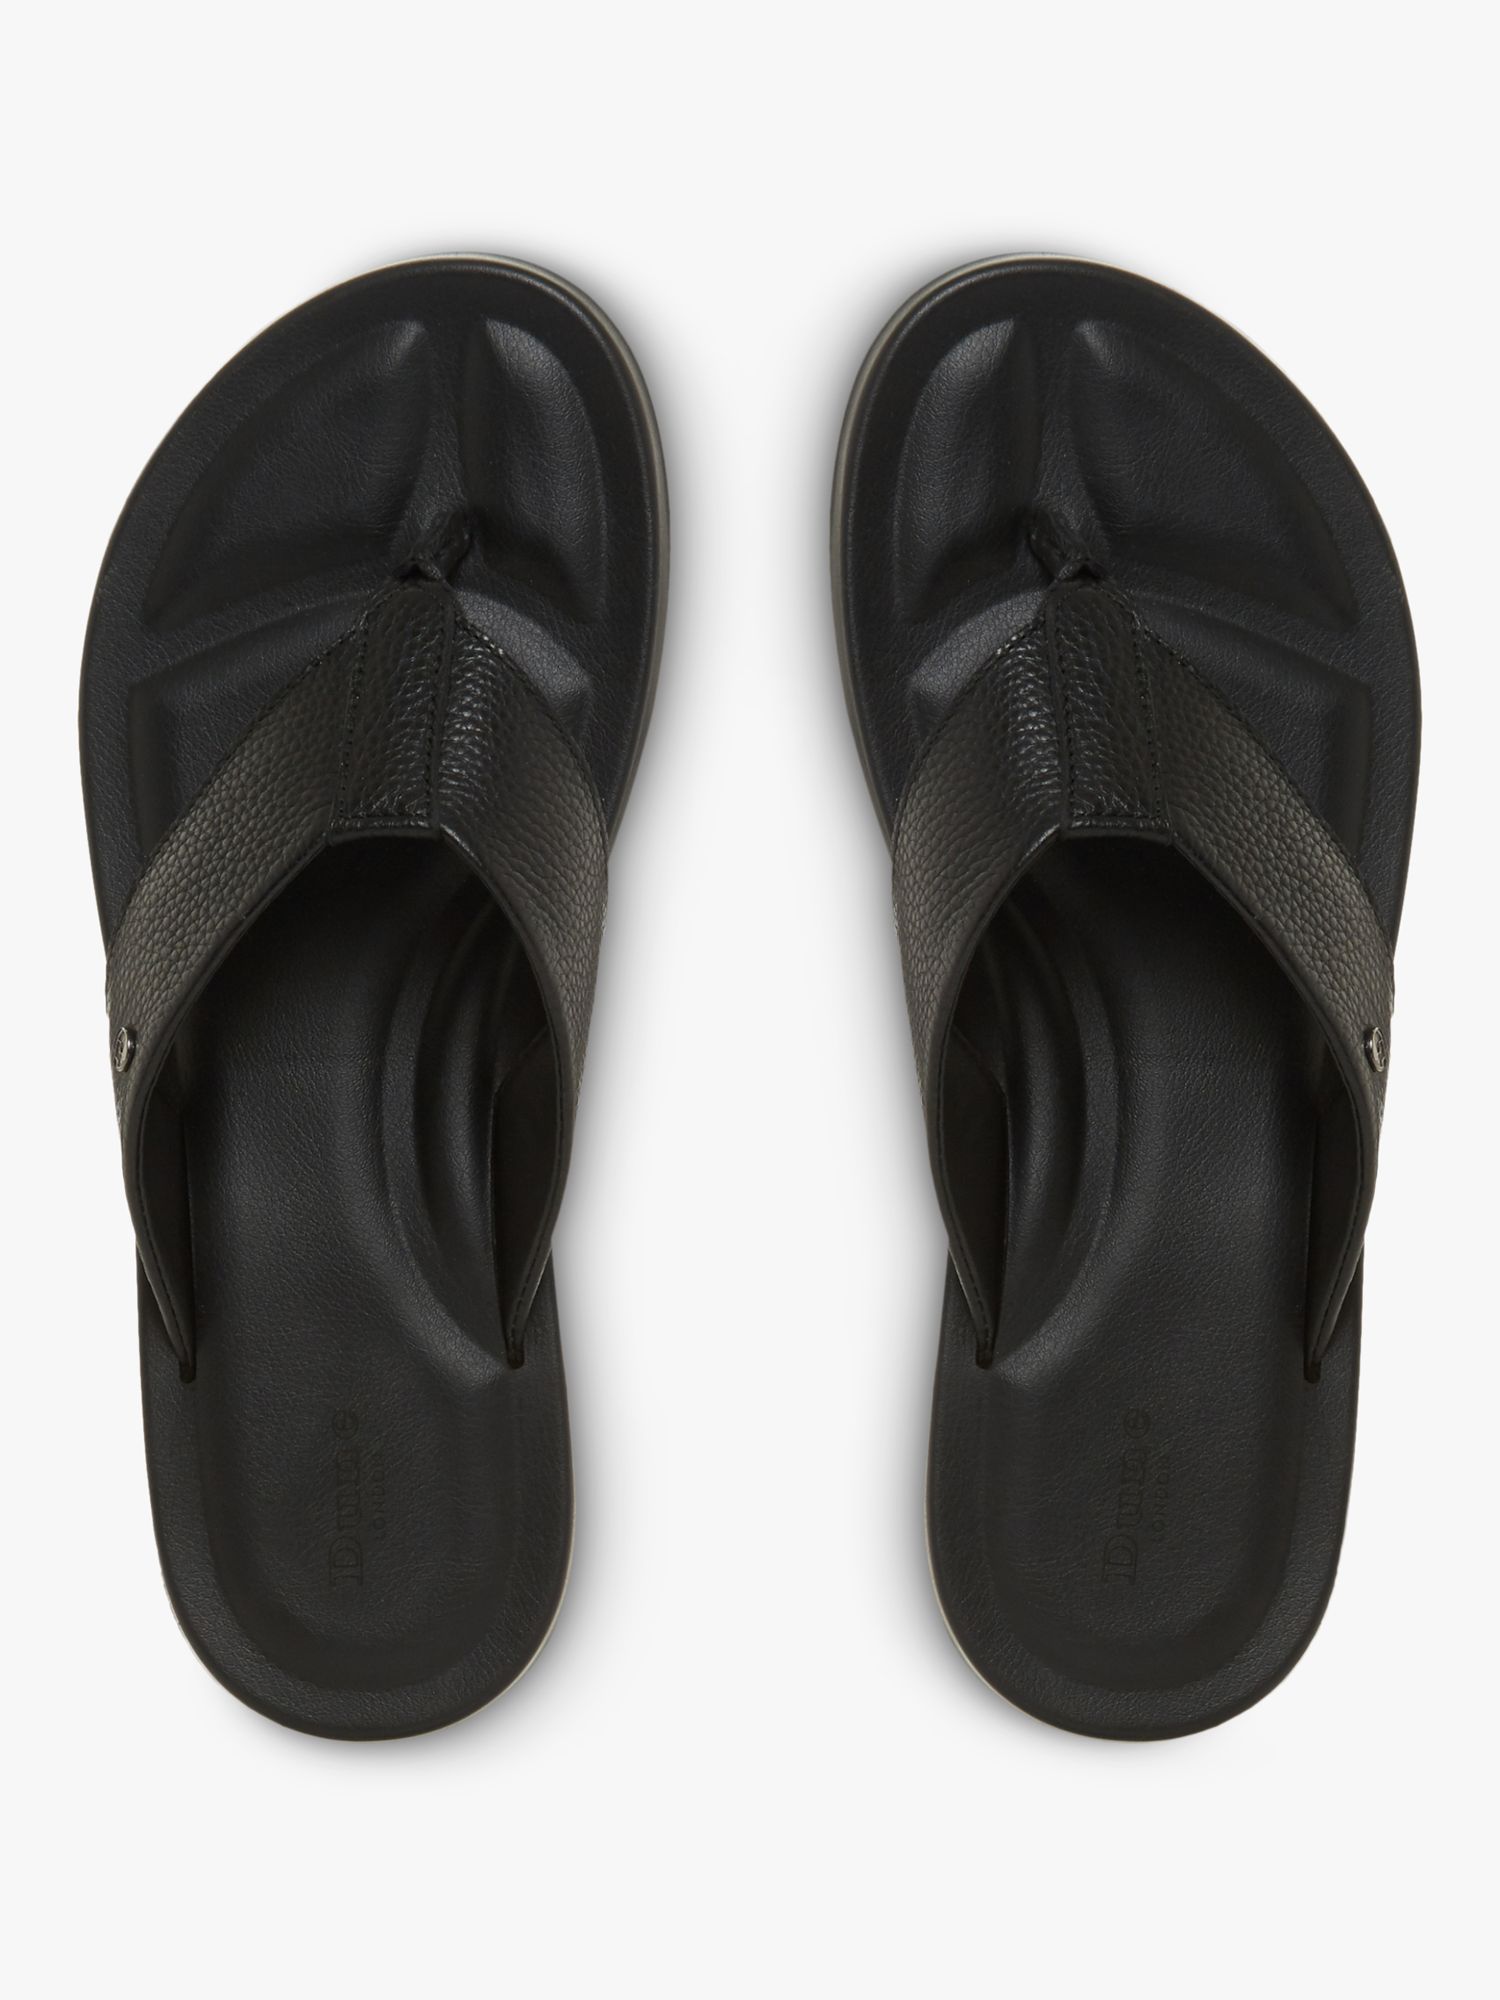 Dune Fredss Toe Post Leather Flip Flops, Black-leather, 6